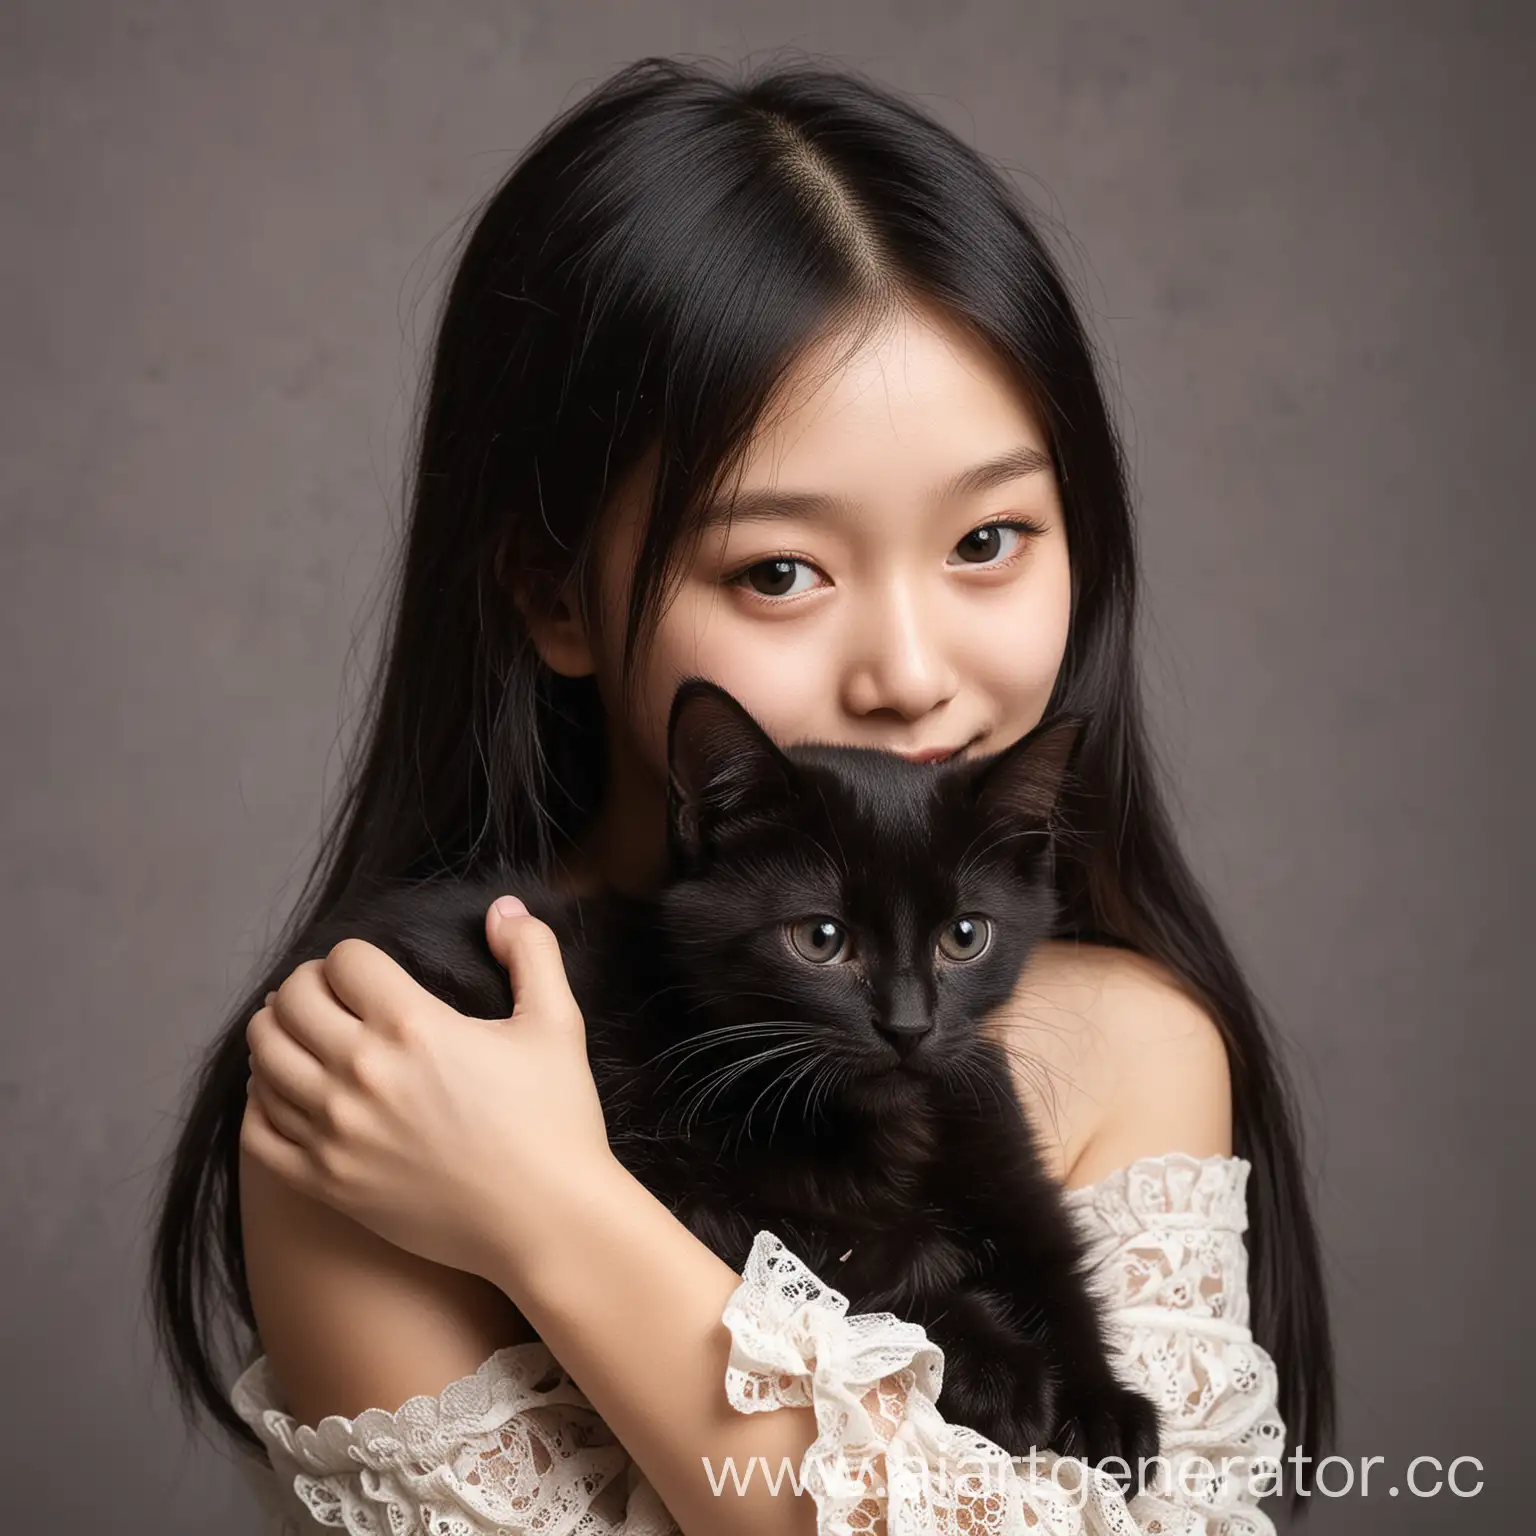 Девушка азиатской внешности  обнимает черного котенка
